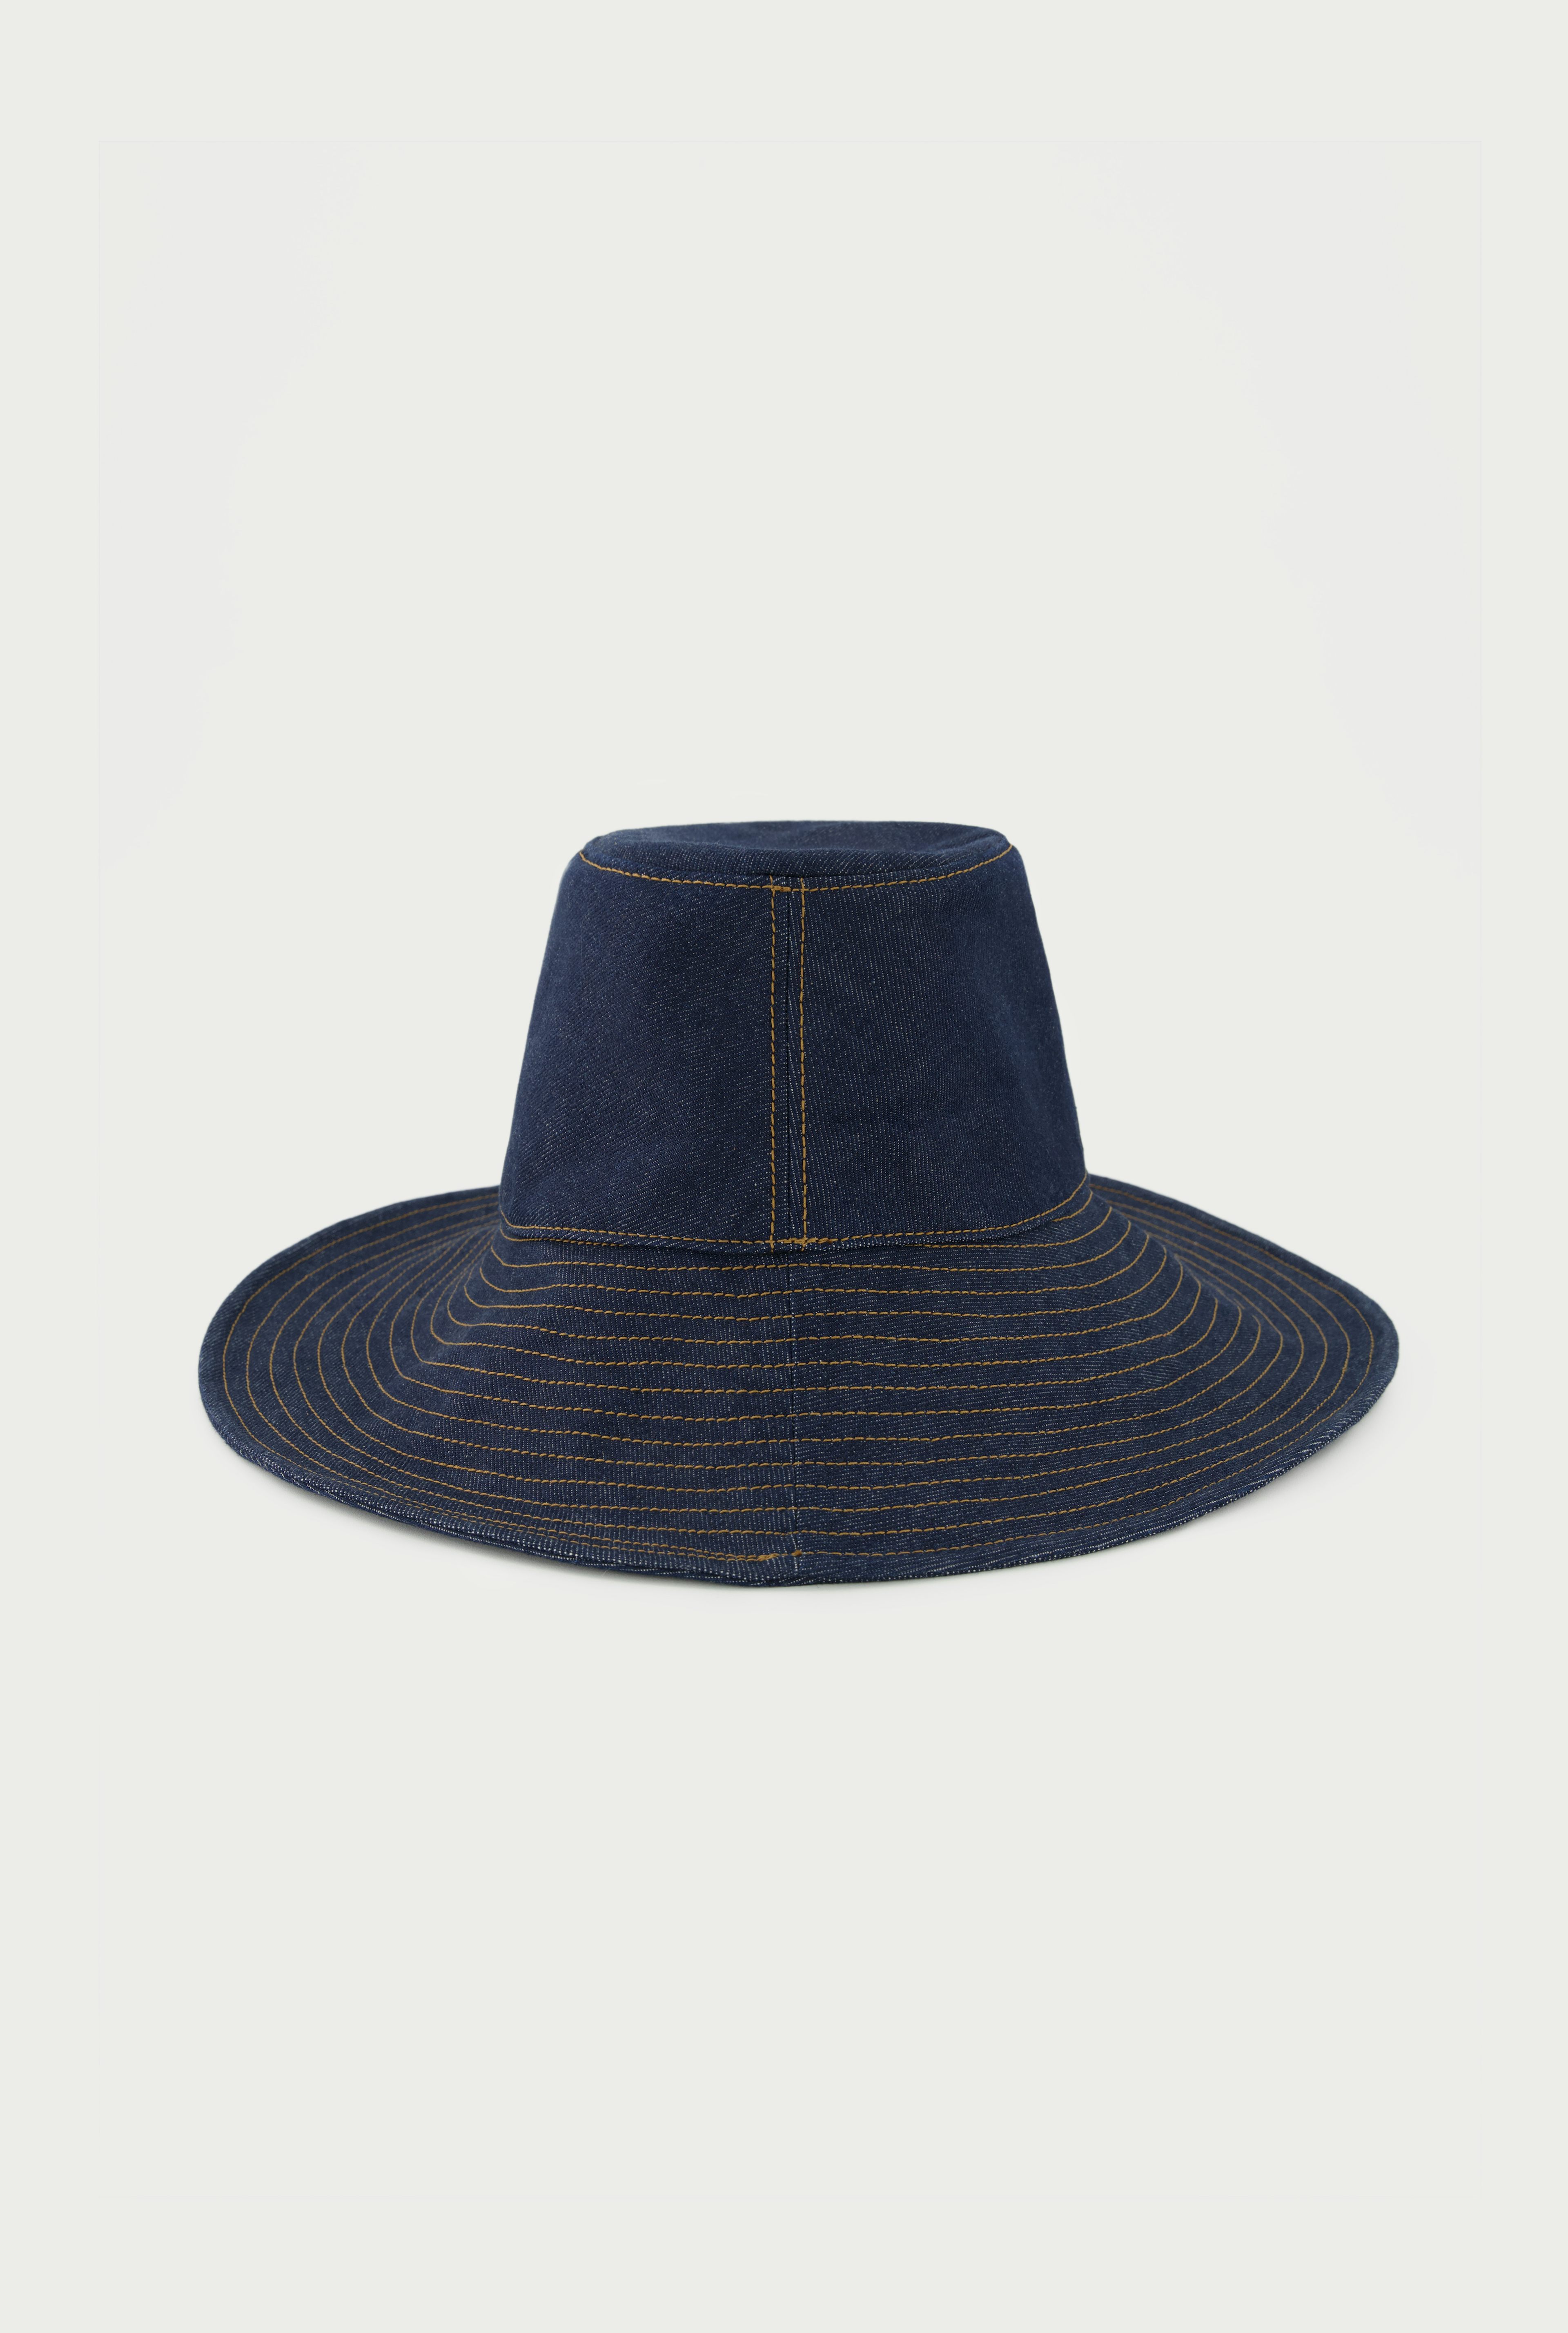 Exclusive - The JPG Bucket hat